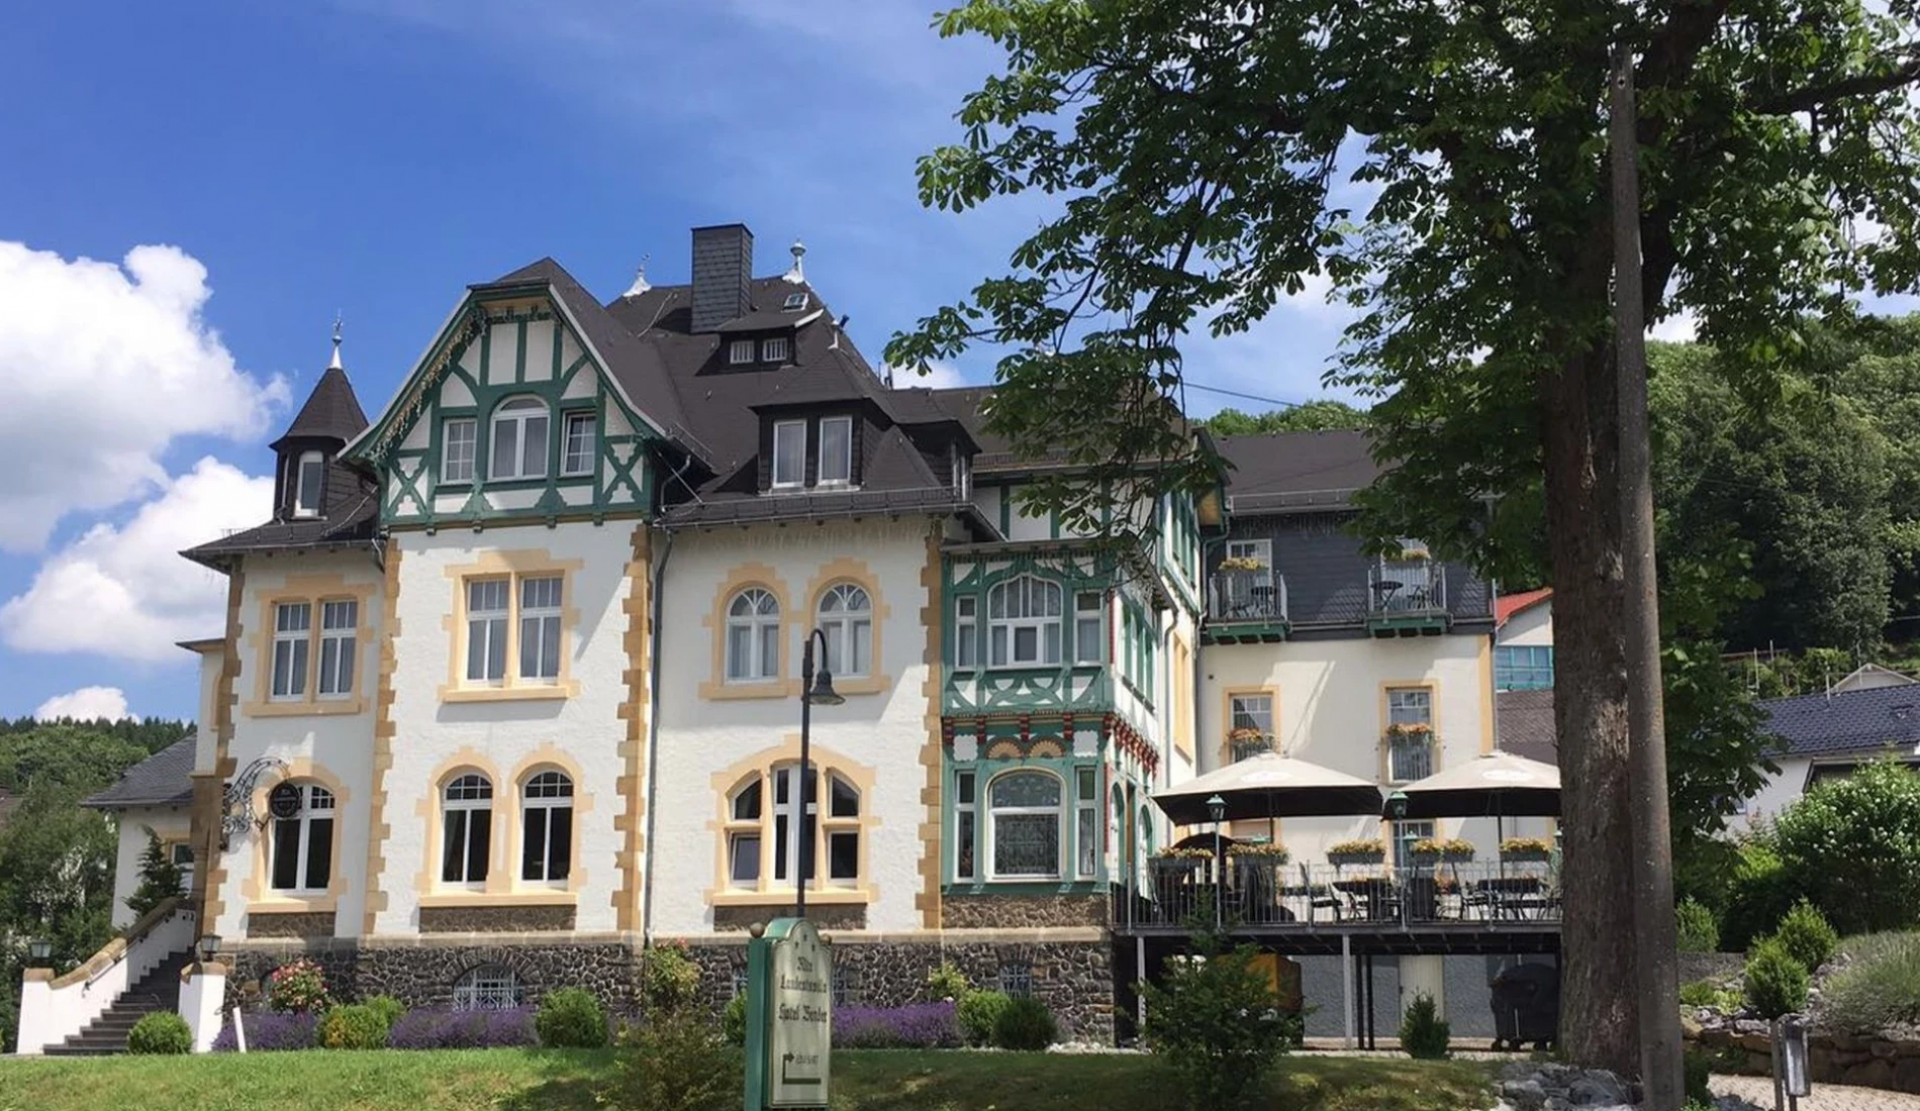 Männertrip – Alte Landratsvilla Hotel Bender